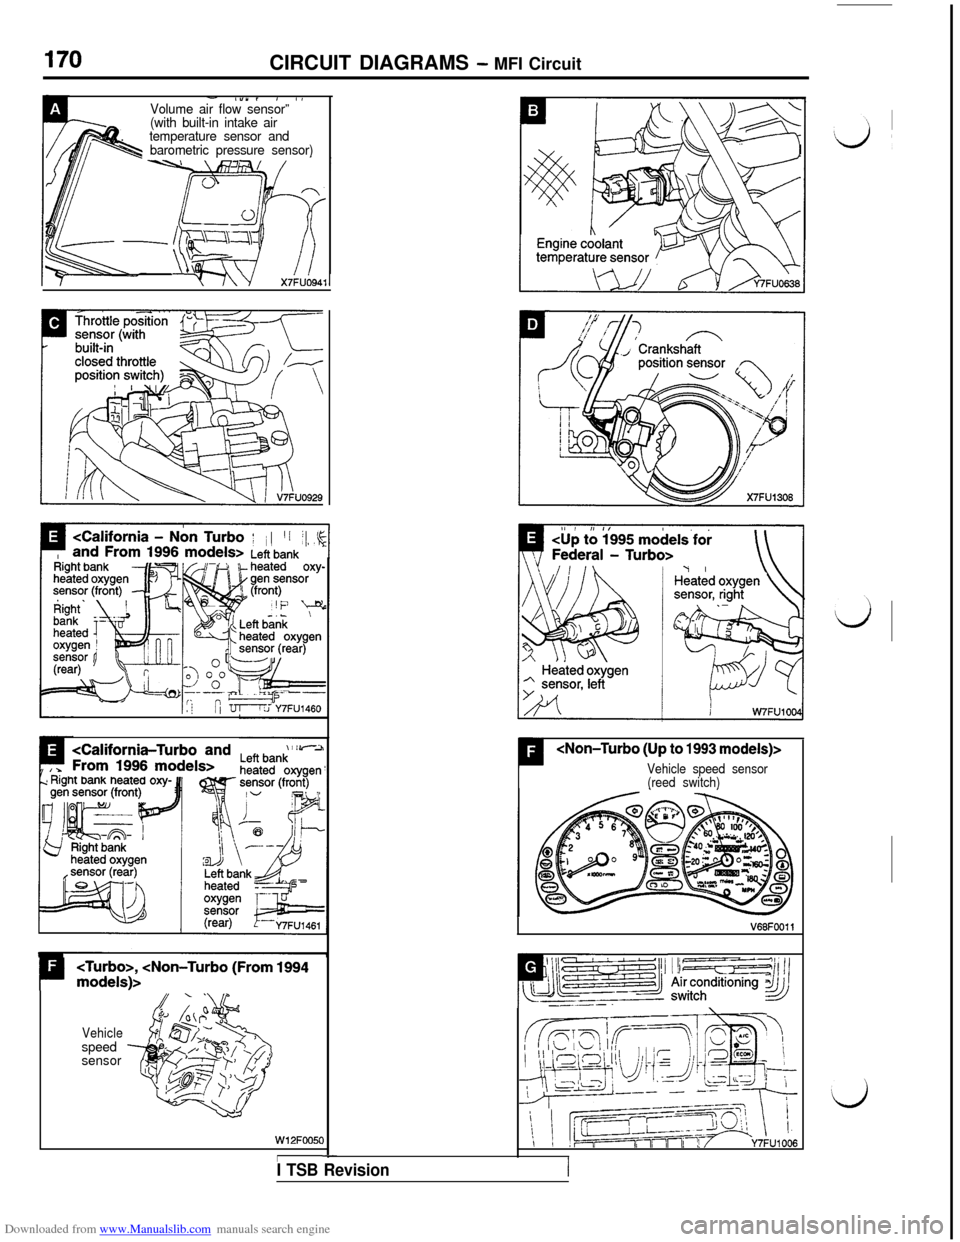 MITSUBISHI 3000GT 1992 2.G Workshop Manual Downloaded from www.Manualslib.com manuals search engine CIRCUIT DIAGRAMS - MFI Circuit
- l”“, , IVolume air flow sensor”’.(with built-in intake air
temperature sensor and
barometric pressure 